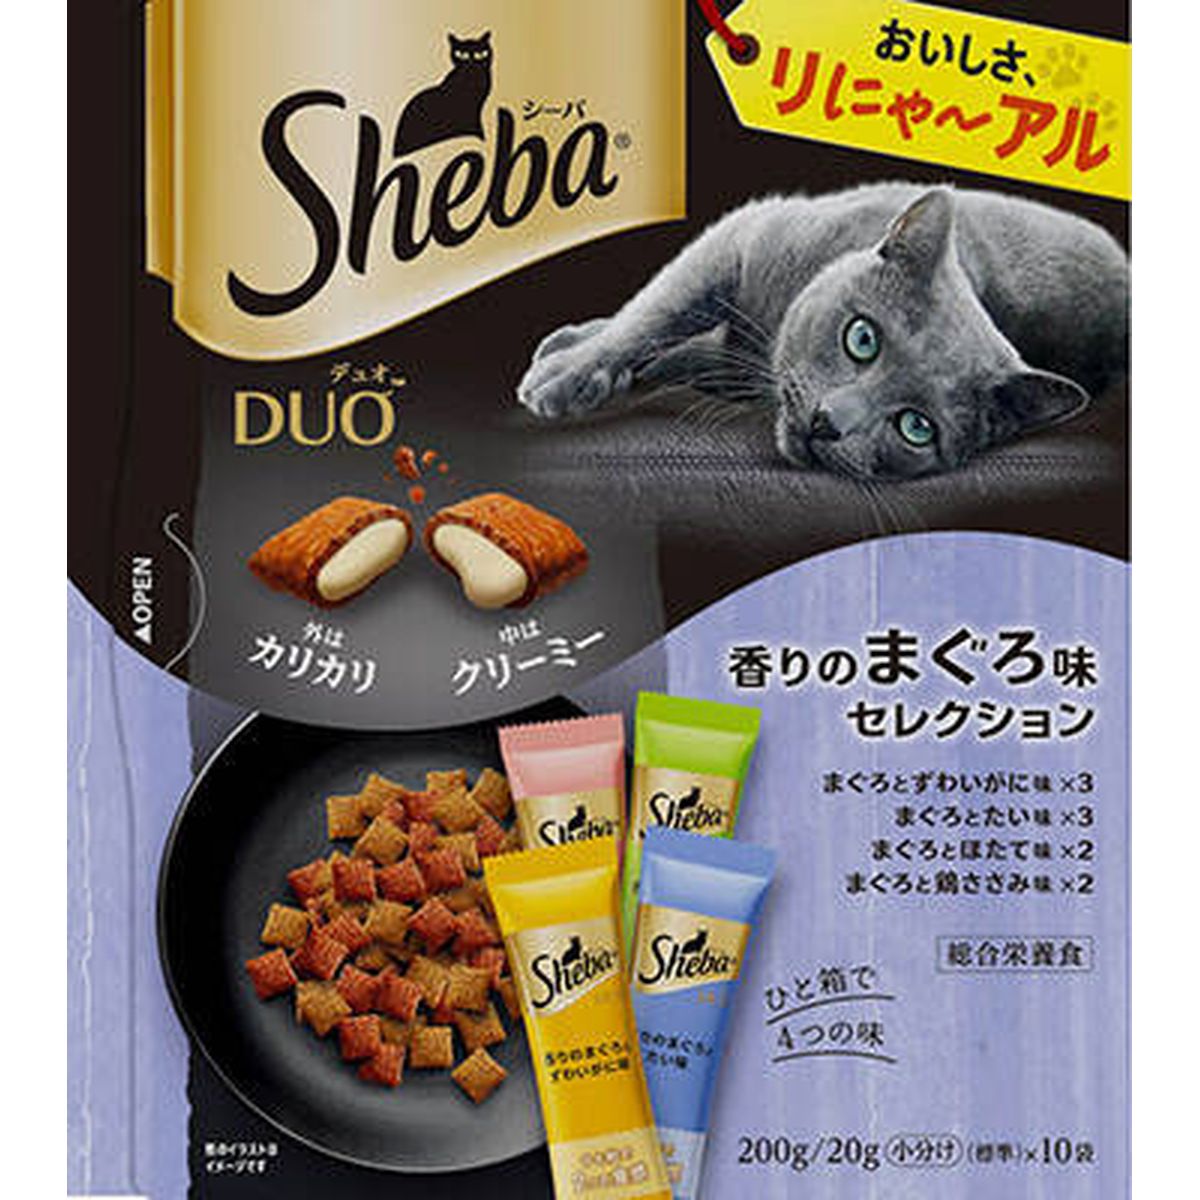 シーバ デュオ 香りのまぐろ味セレクション200g×12袋